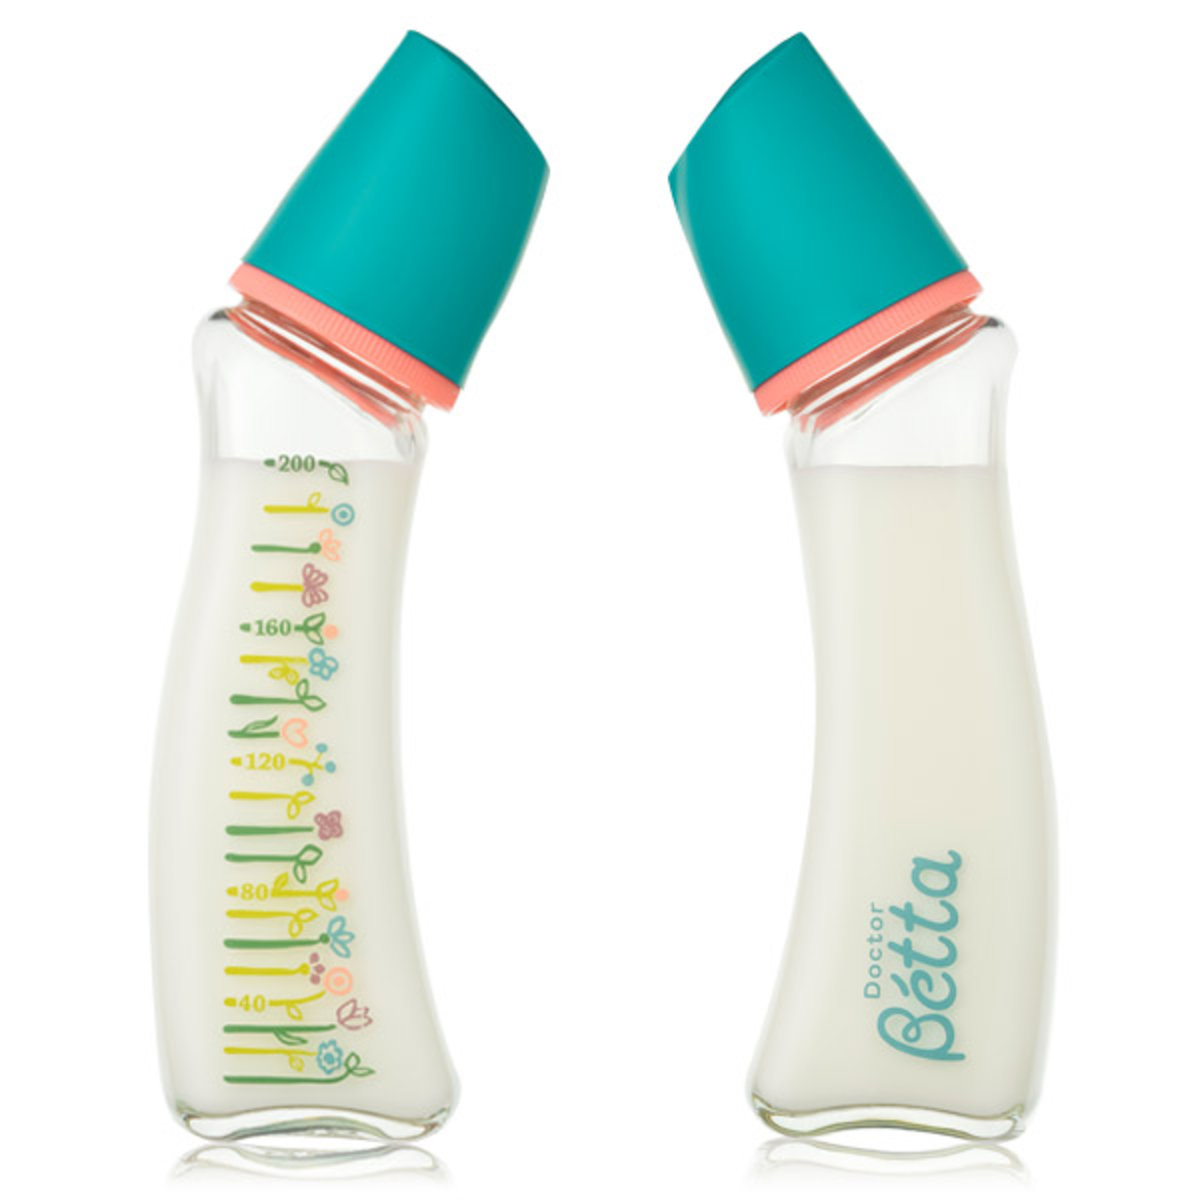 Betta - 智能系列玻璃奶瓶 (GF5, 200ml)